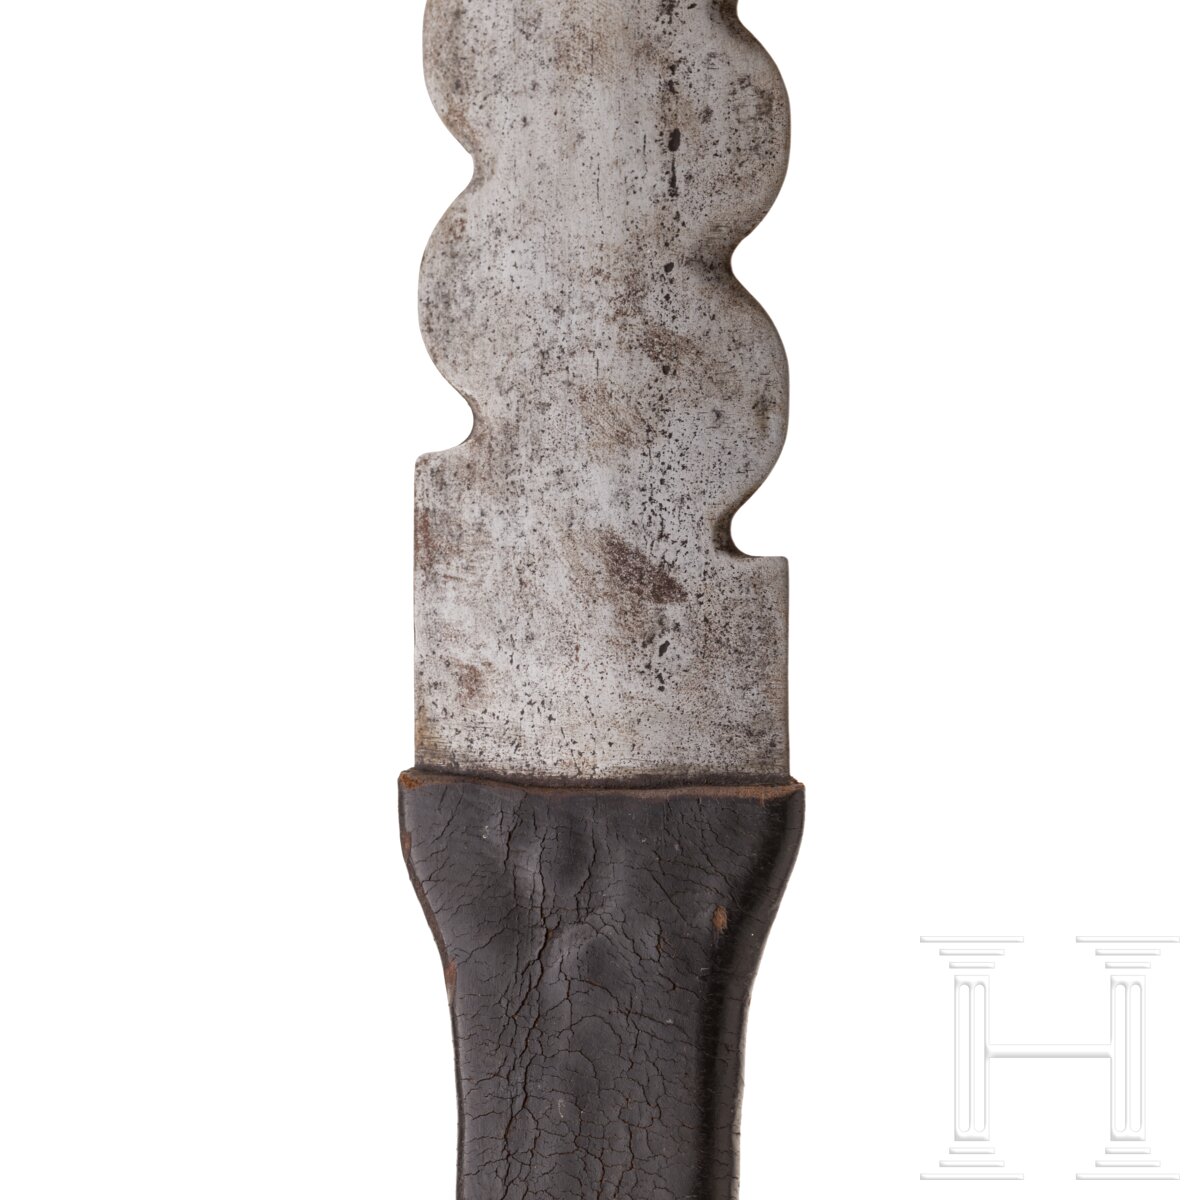 Geflammter Bidenhänder, süddeutsch, um 1600 - Image 10 of 10